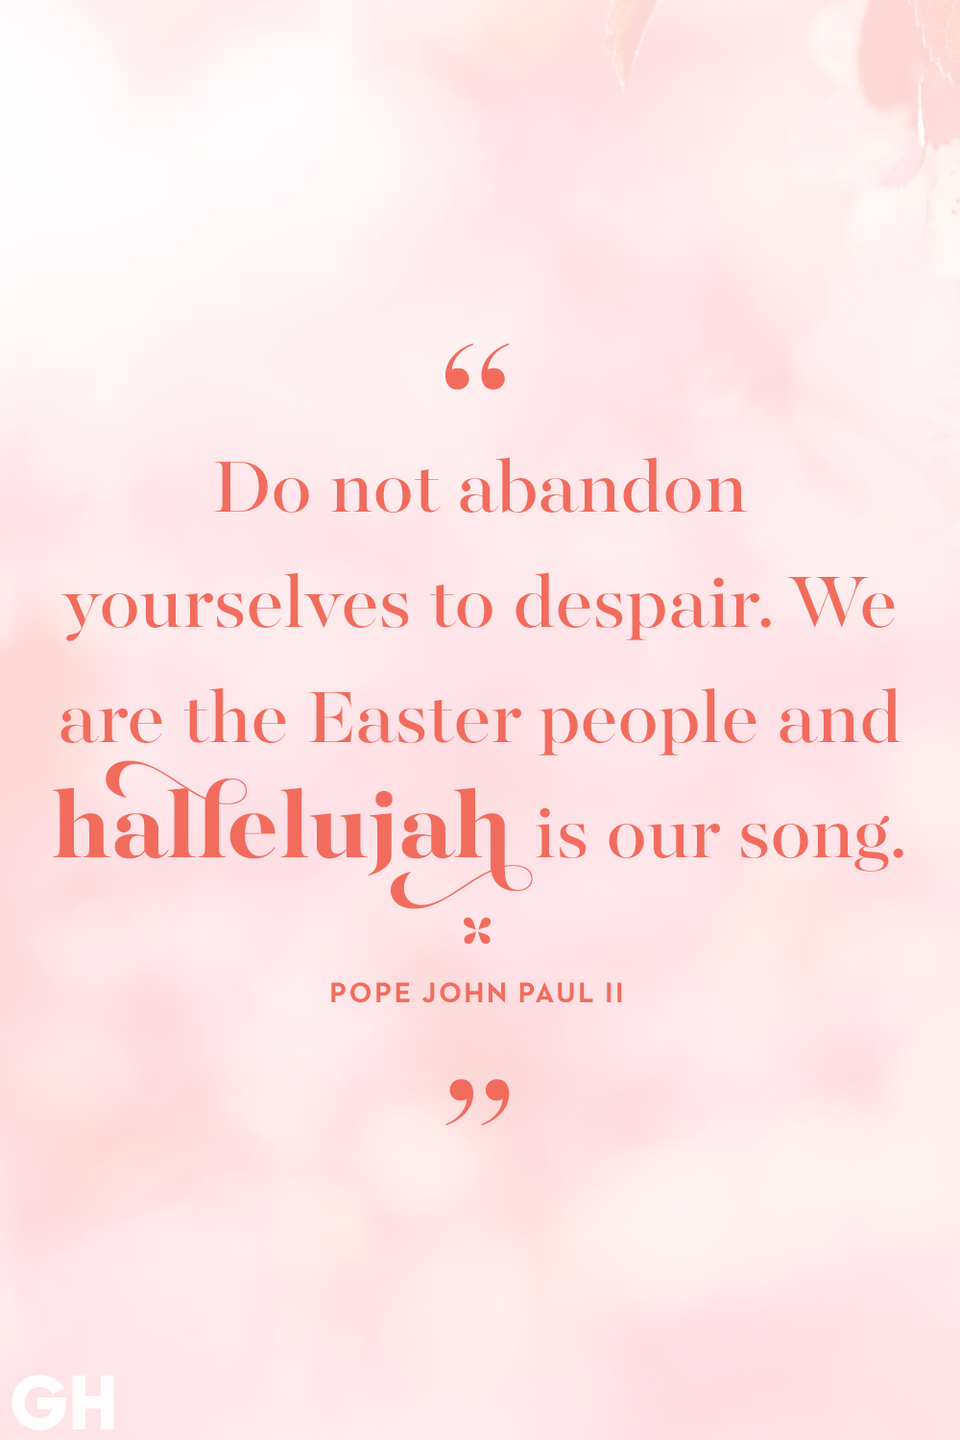 47) Pope John Paul II